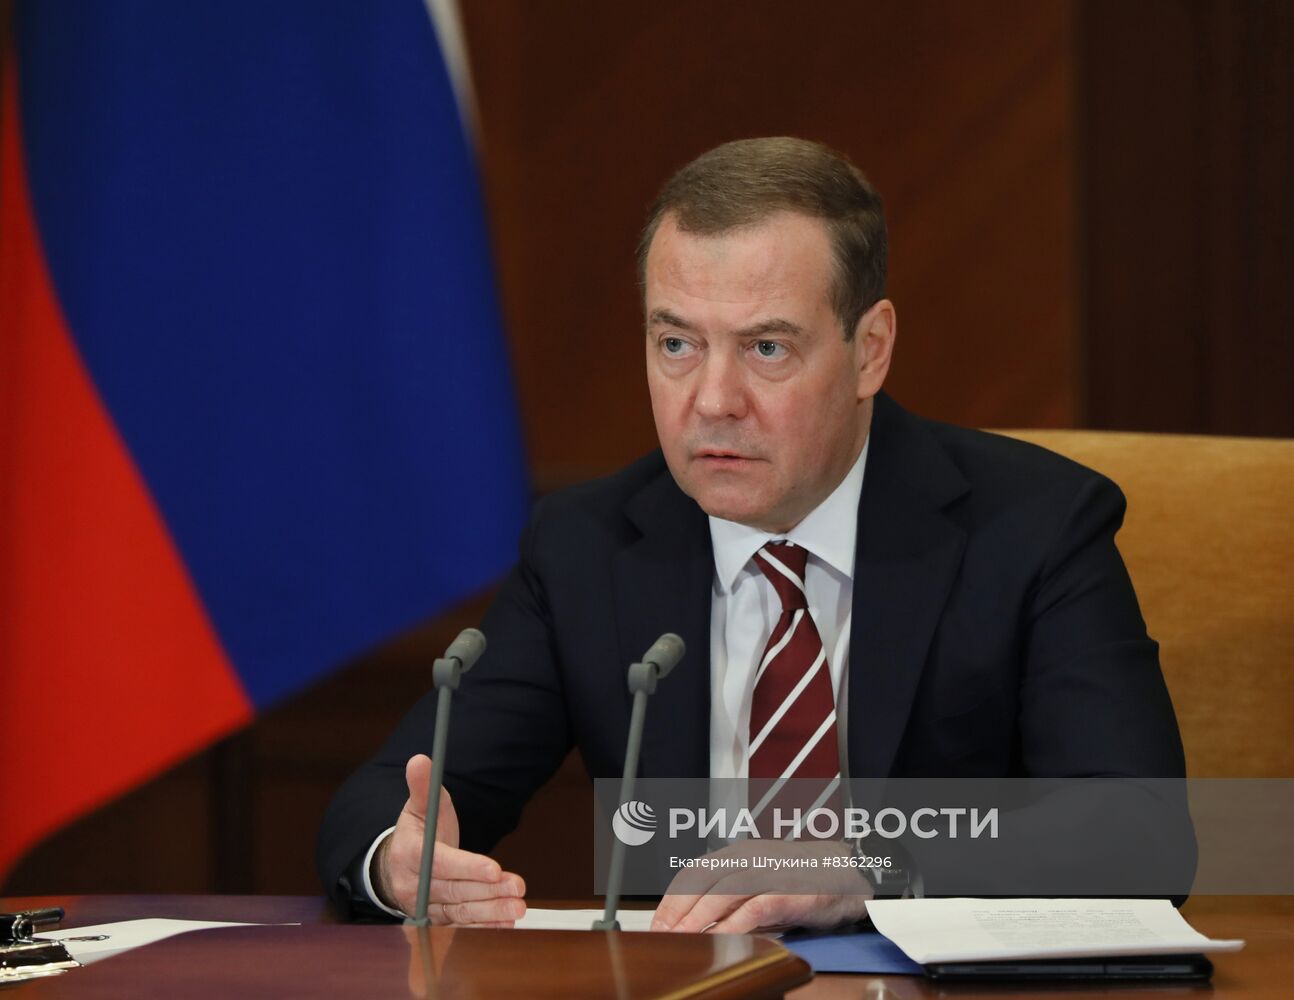 Зампред Совбеза РФ Д. Медведев провел заседание оргкомитета по подготовке мероприятий к 80-летию Сталинградской битвы